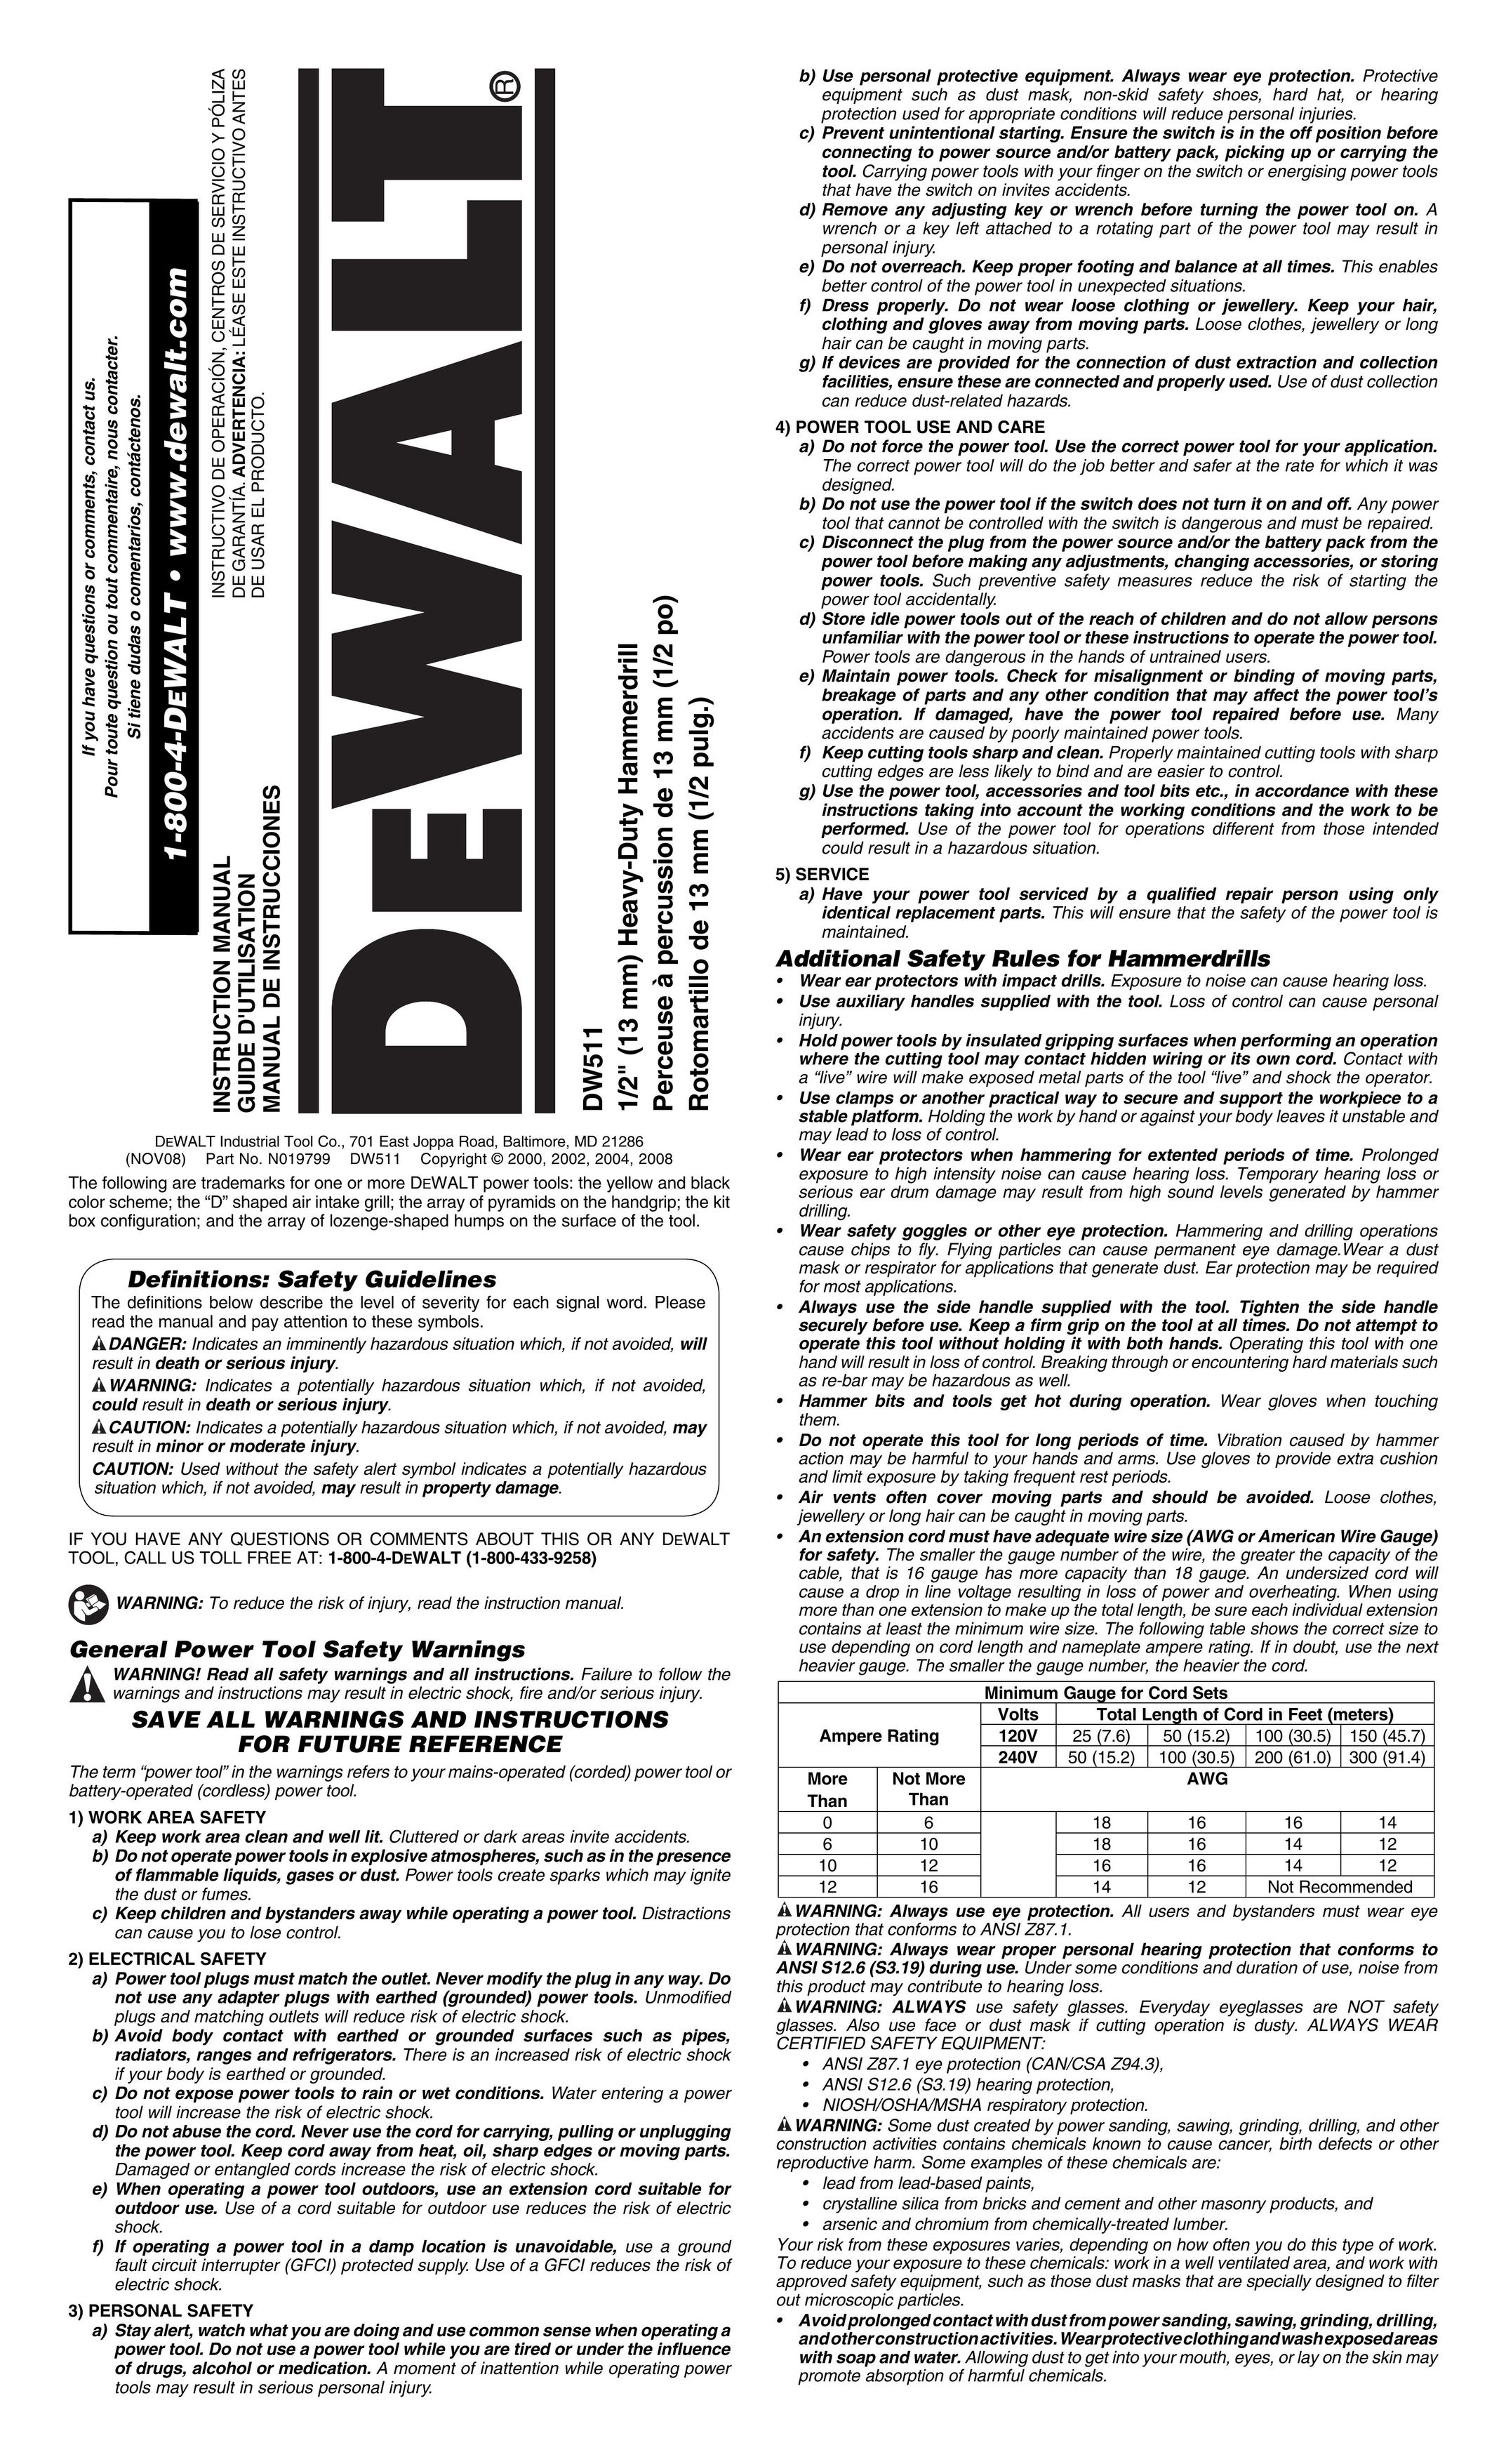 DeWalt DW511 Cordless Drill User Manual